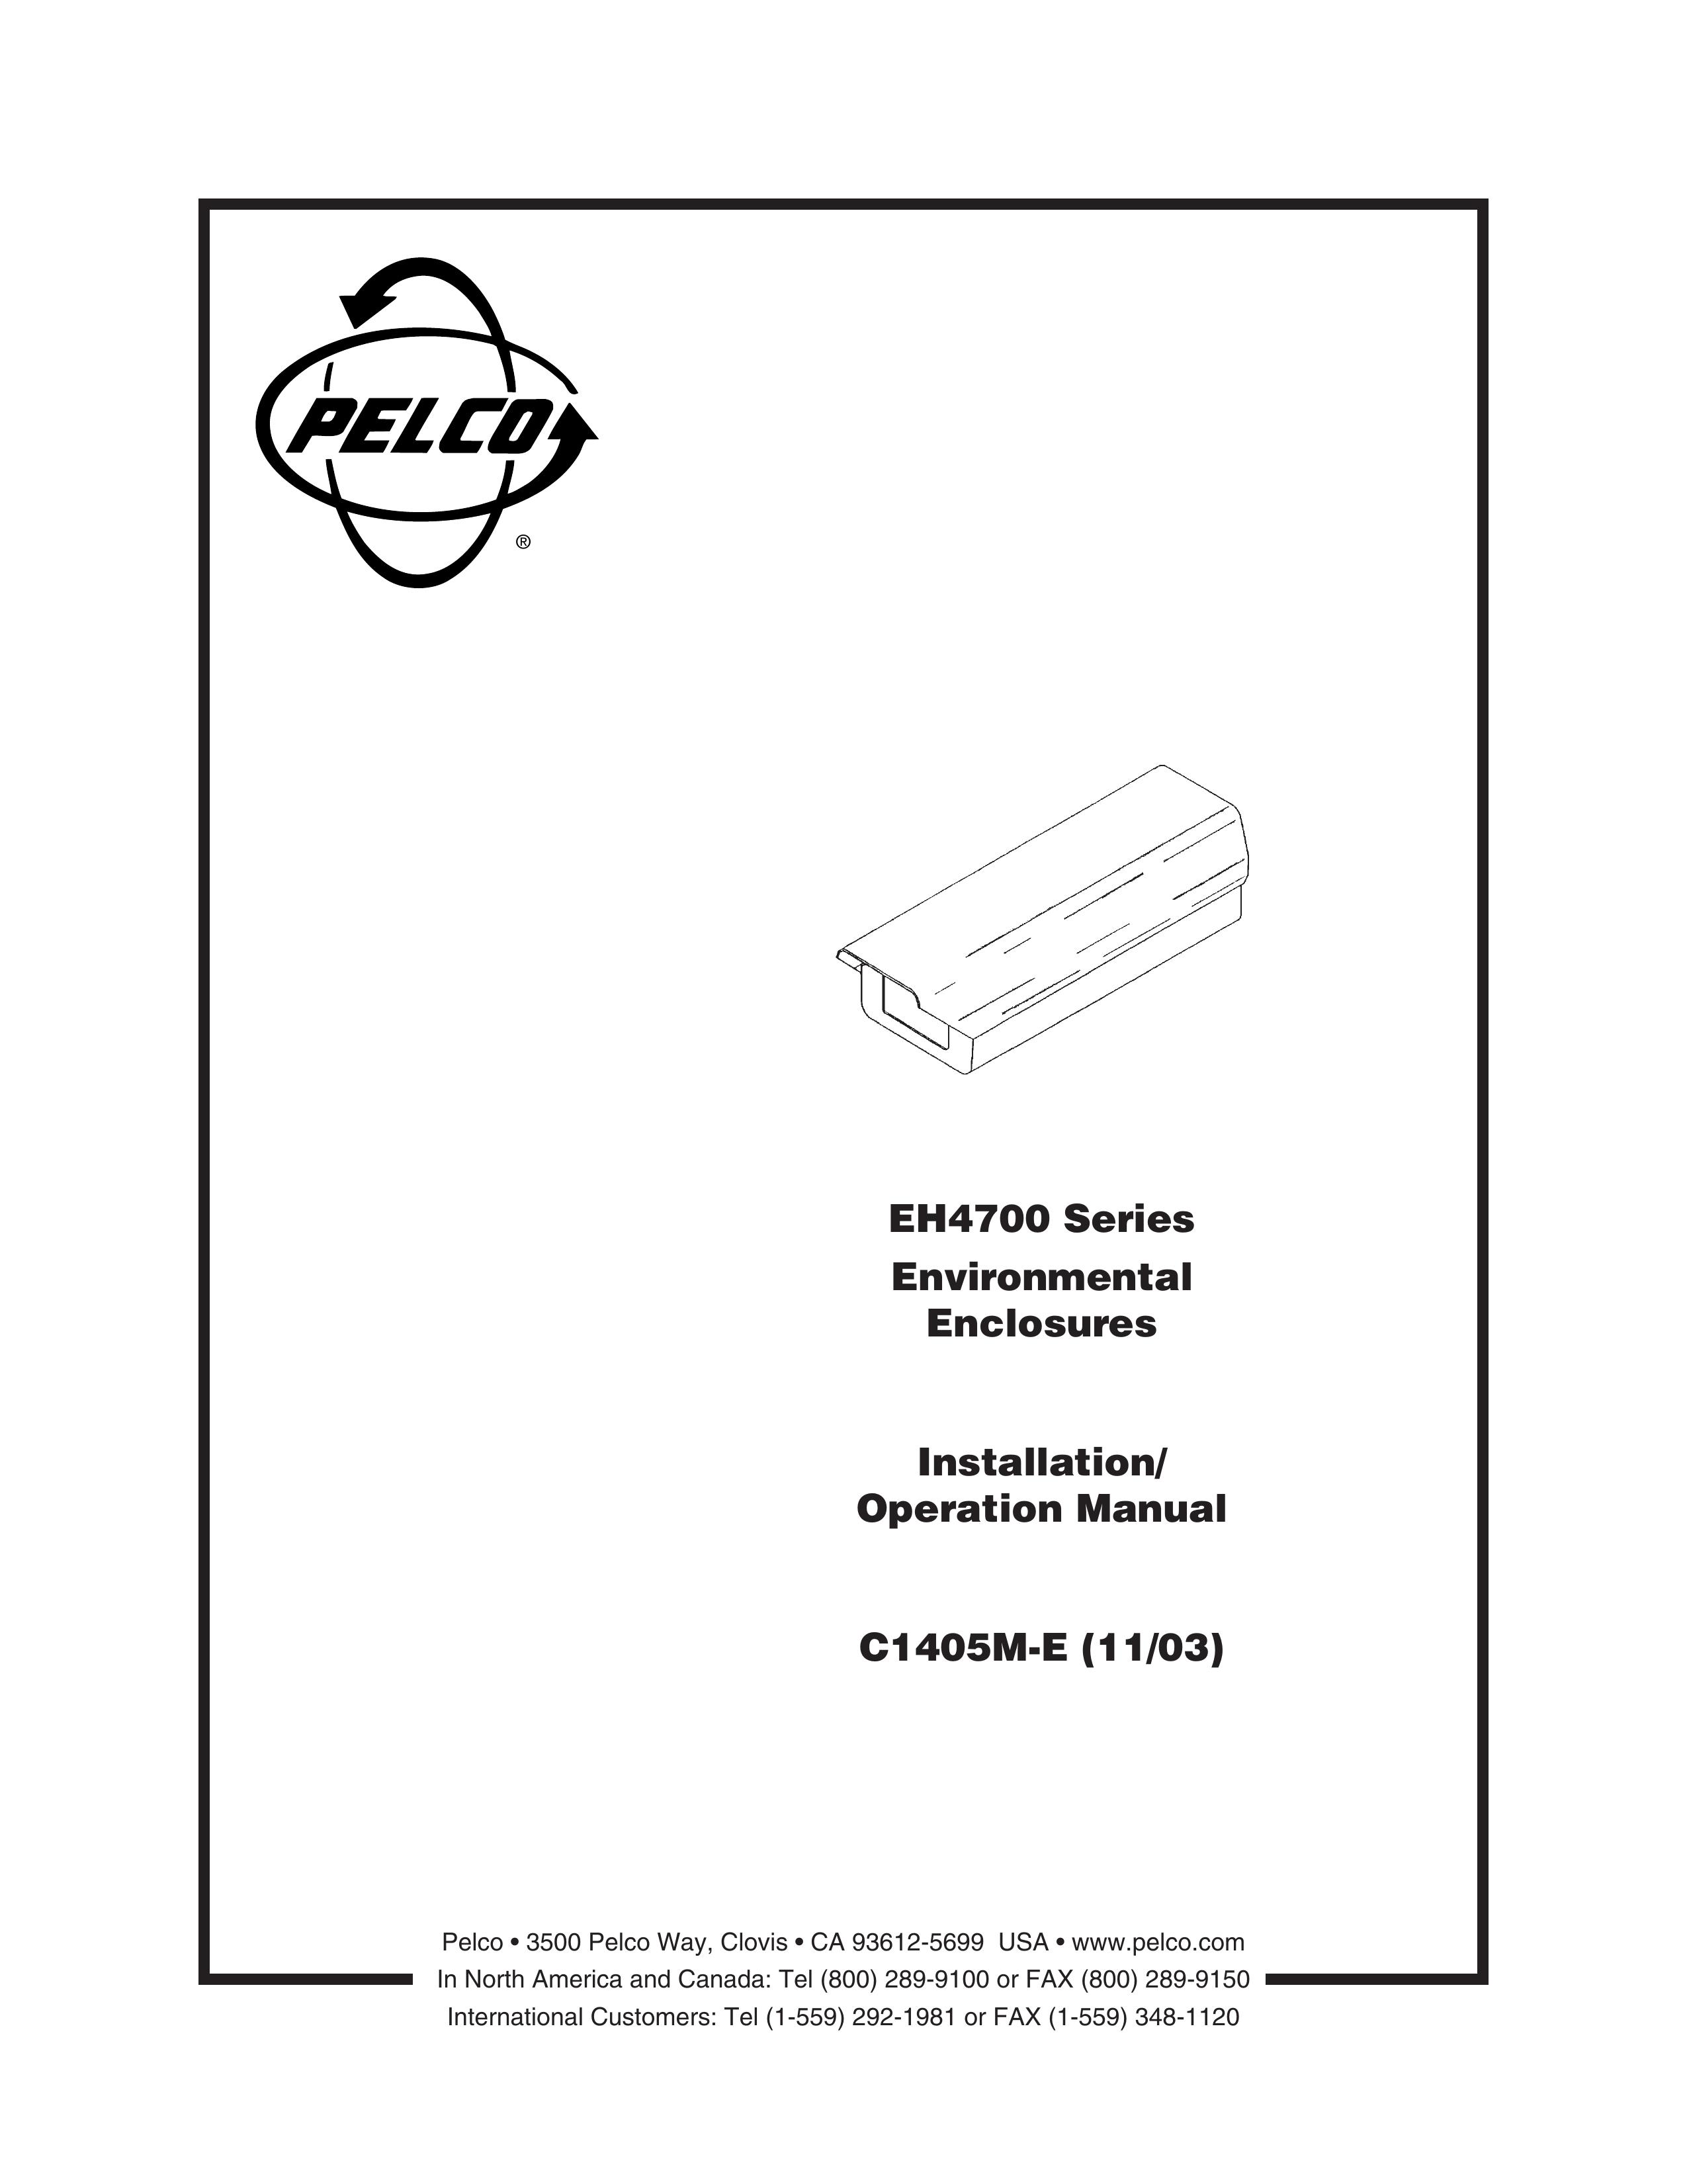 Pelco c1405M-E Security Camera User Manual